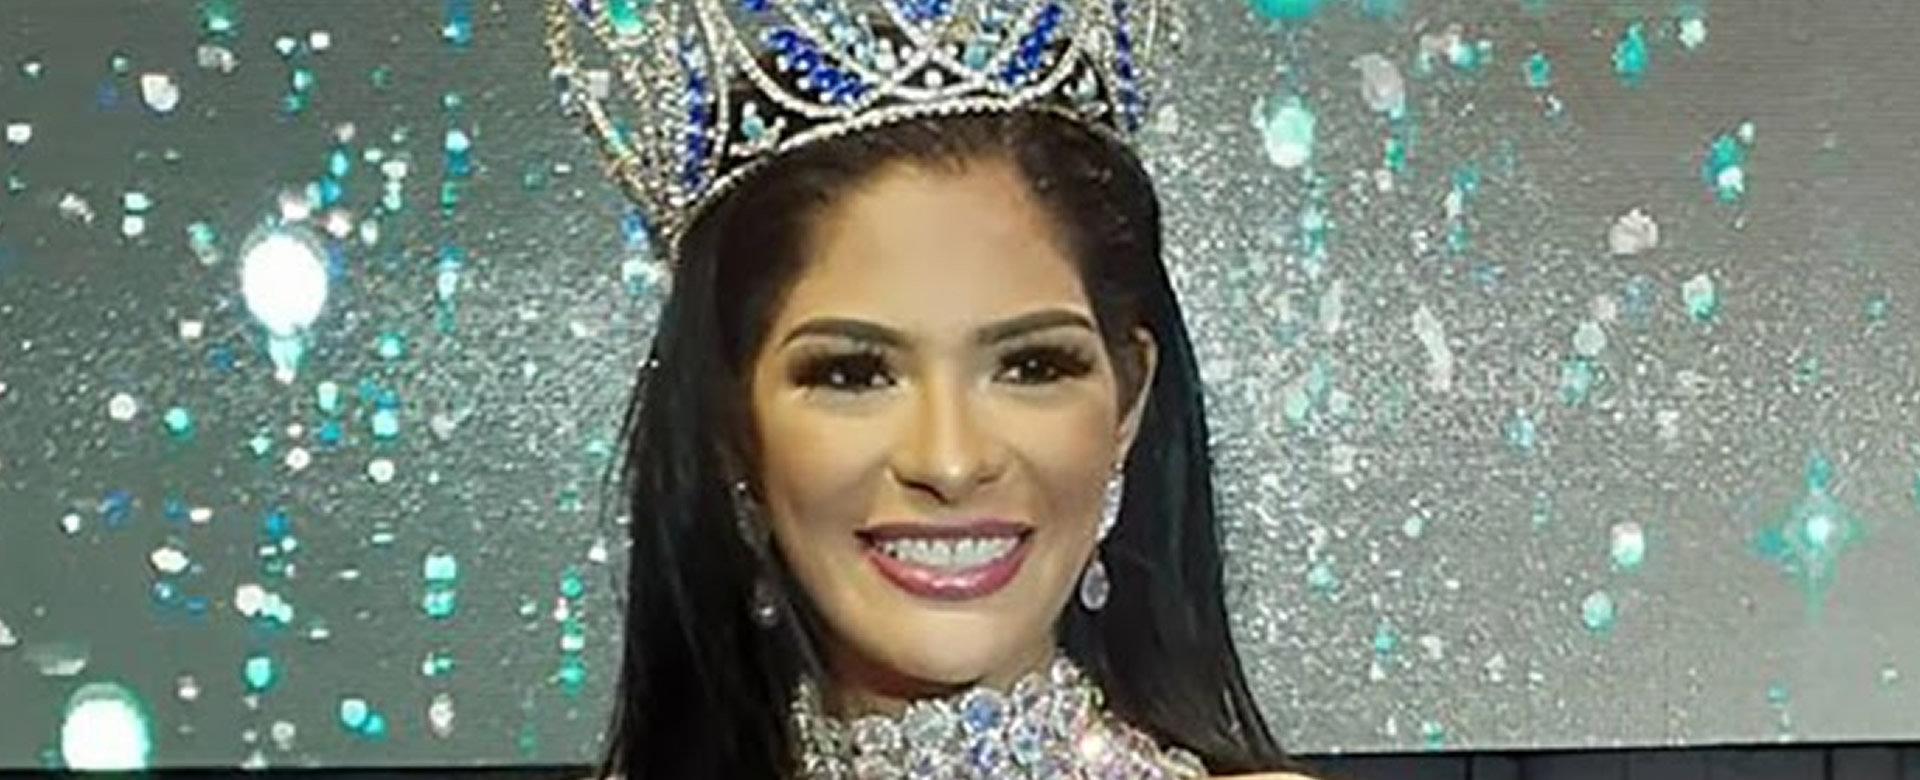 Sheynnis Palacios clasificar Miss Mundo Viva Nicaragua Canal 13